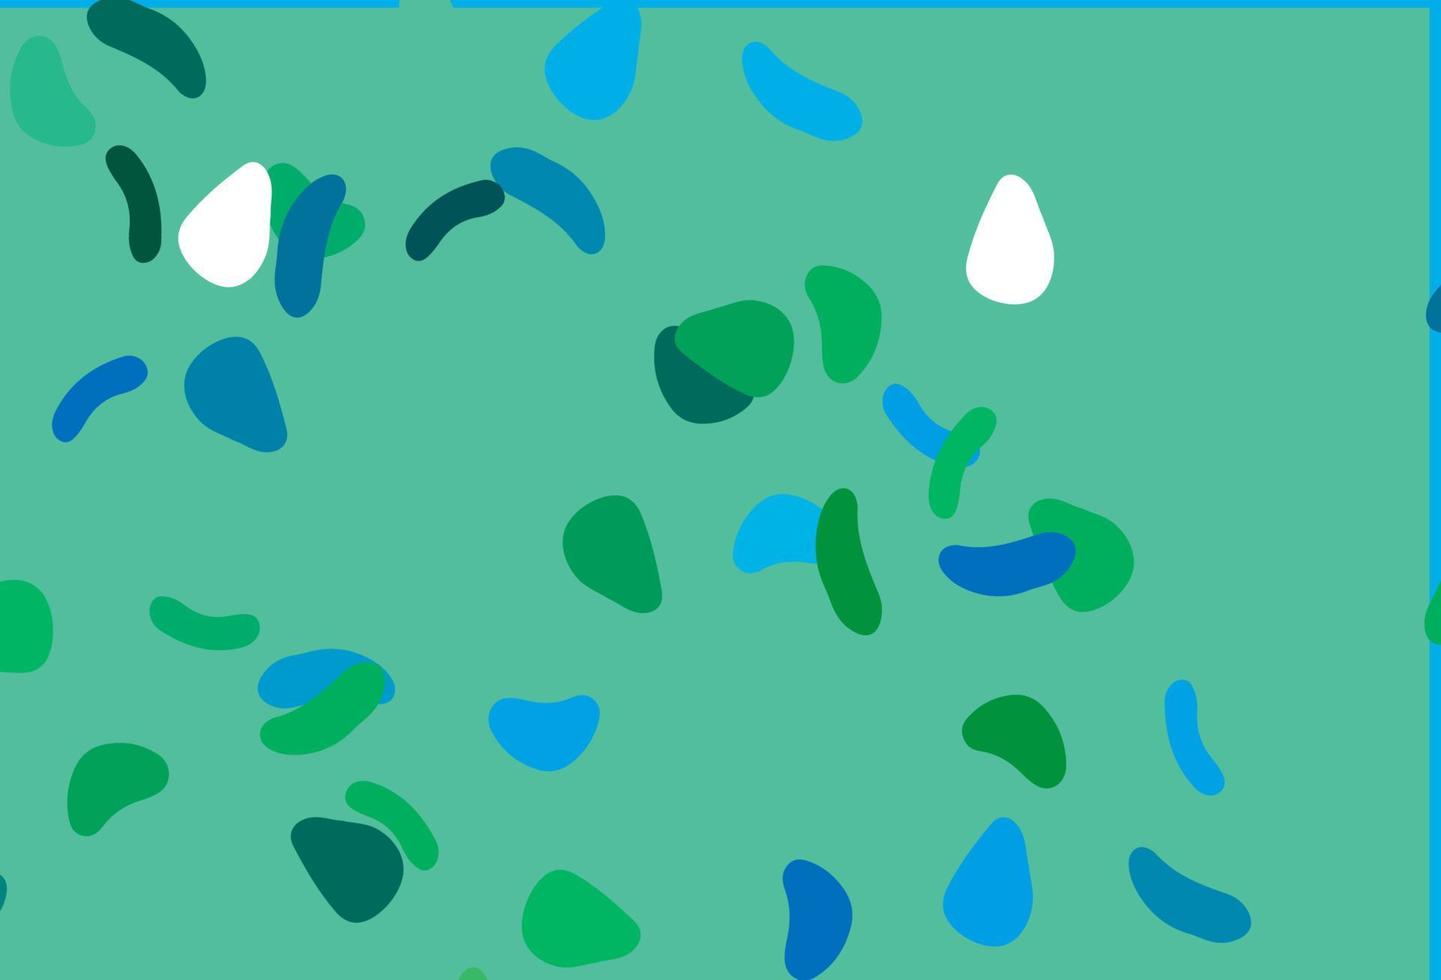 ljusblå, grön vektorbakgrund med abstrakta former. vektor